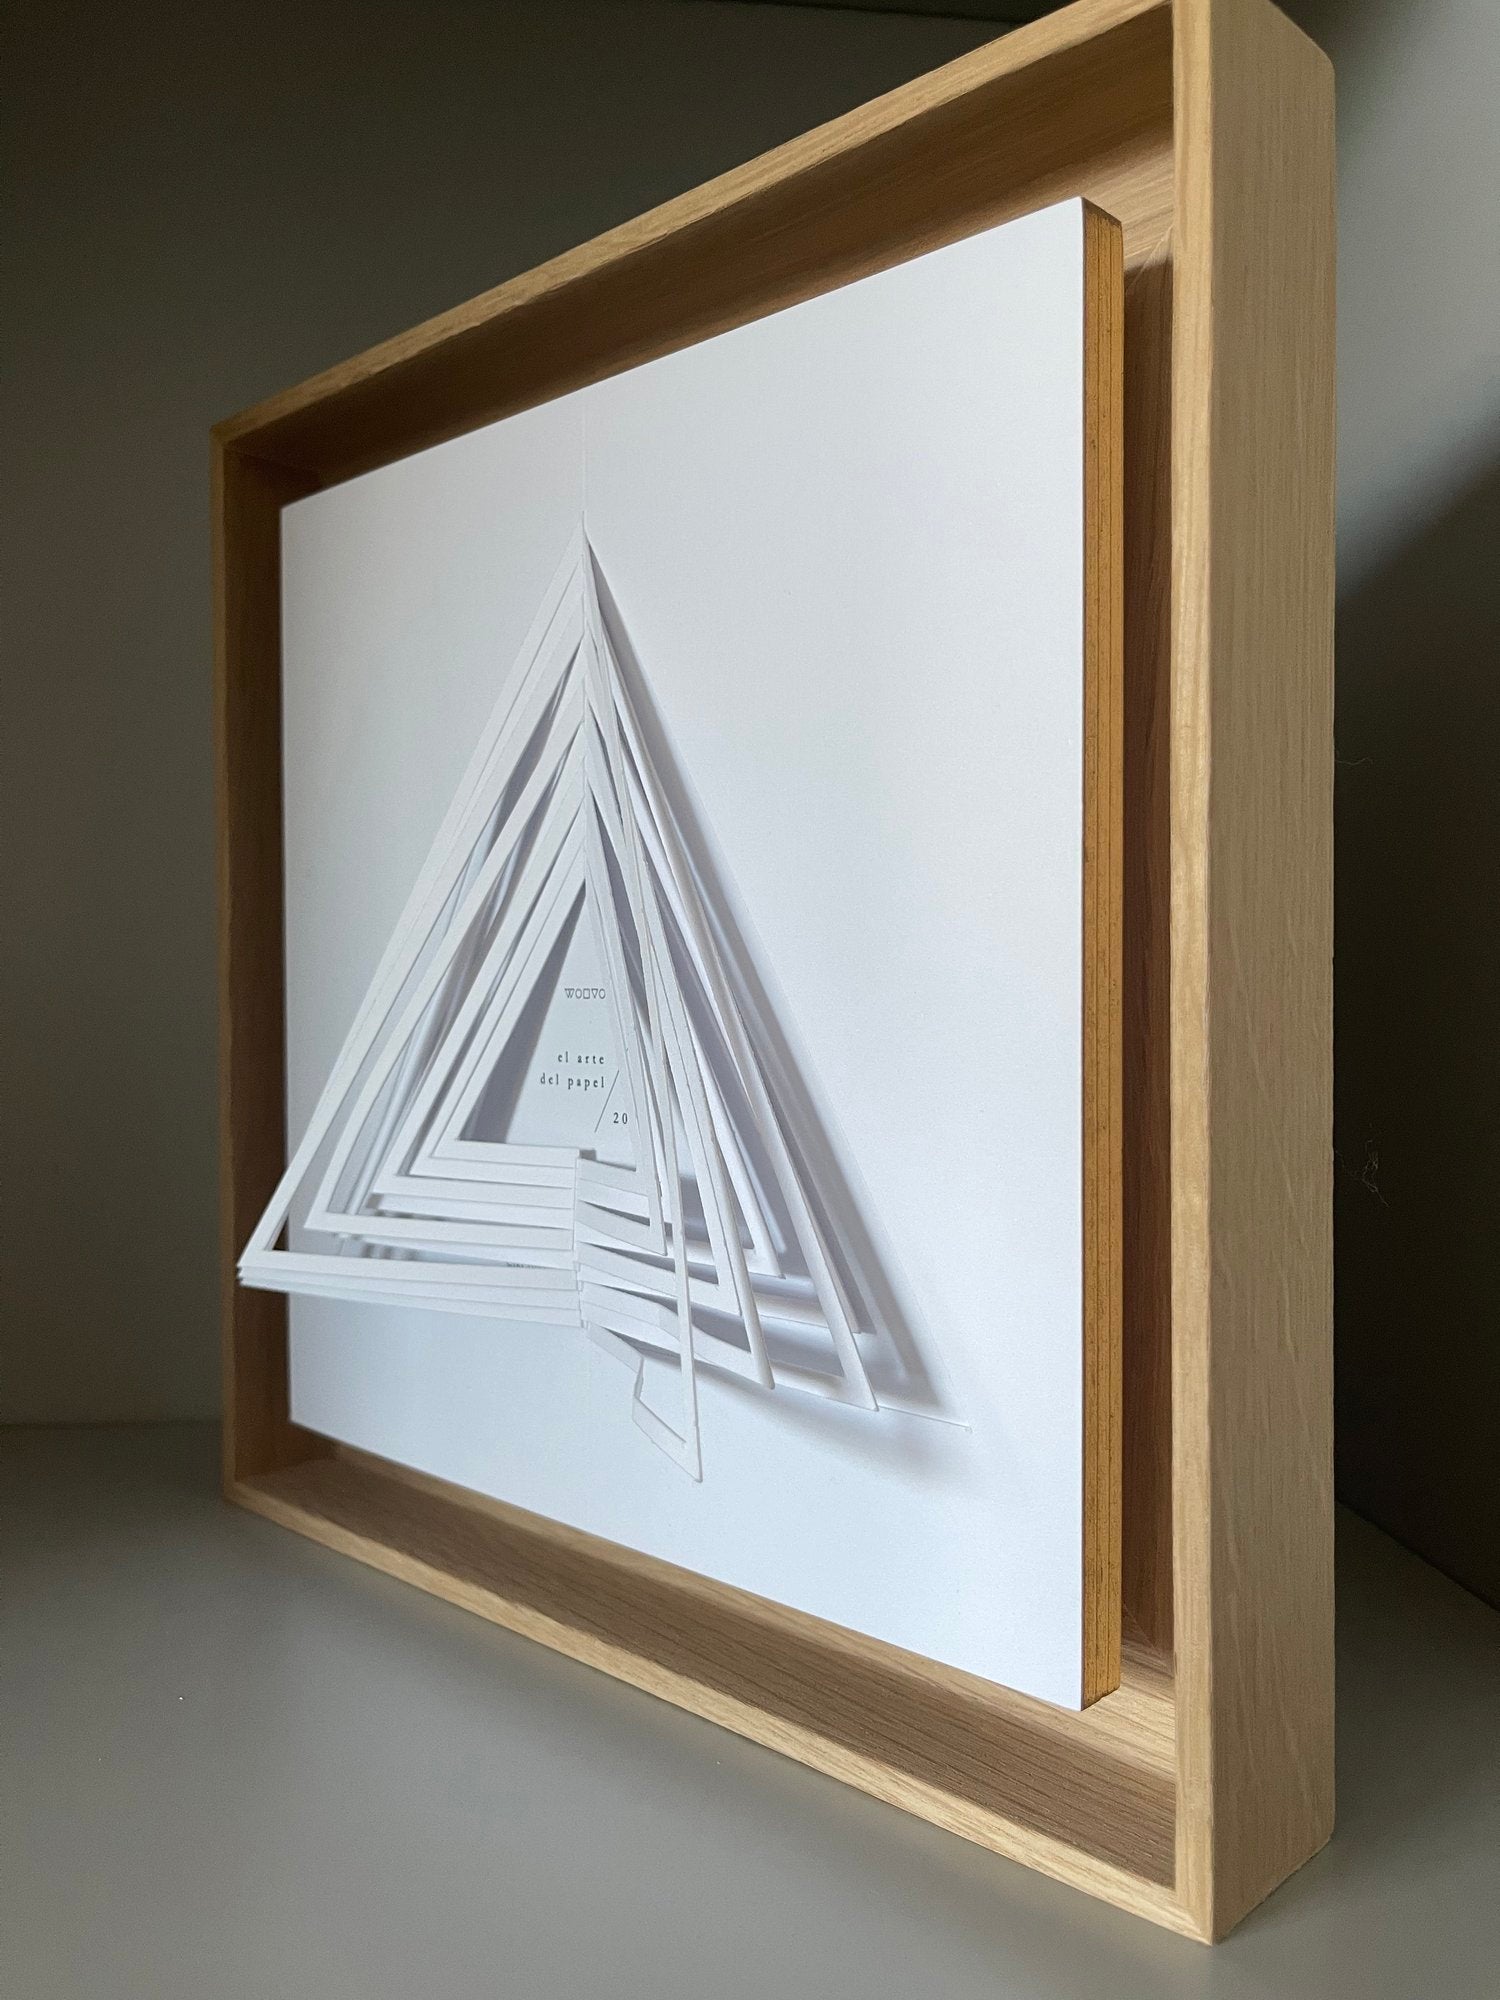 El Arte del Papel "Triángulo"